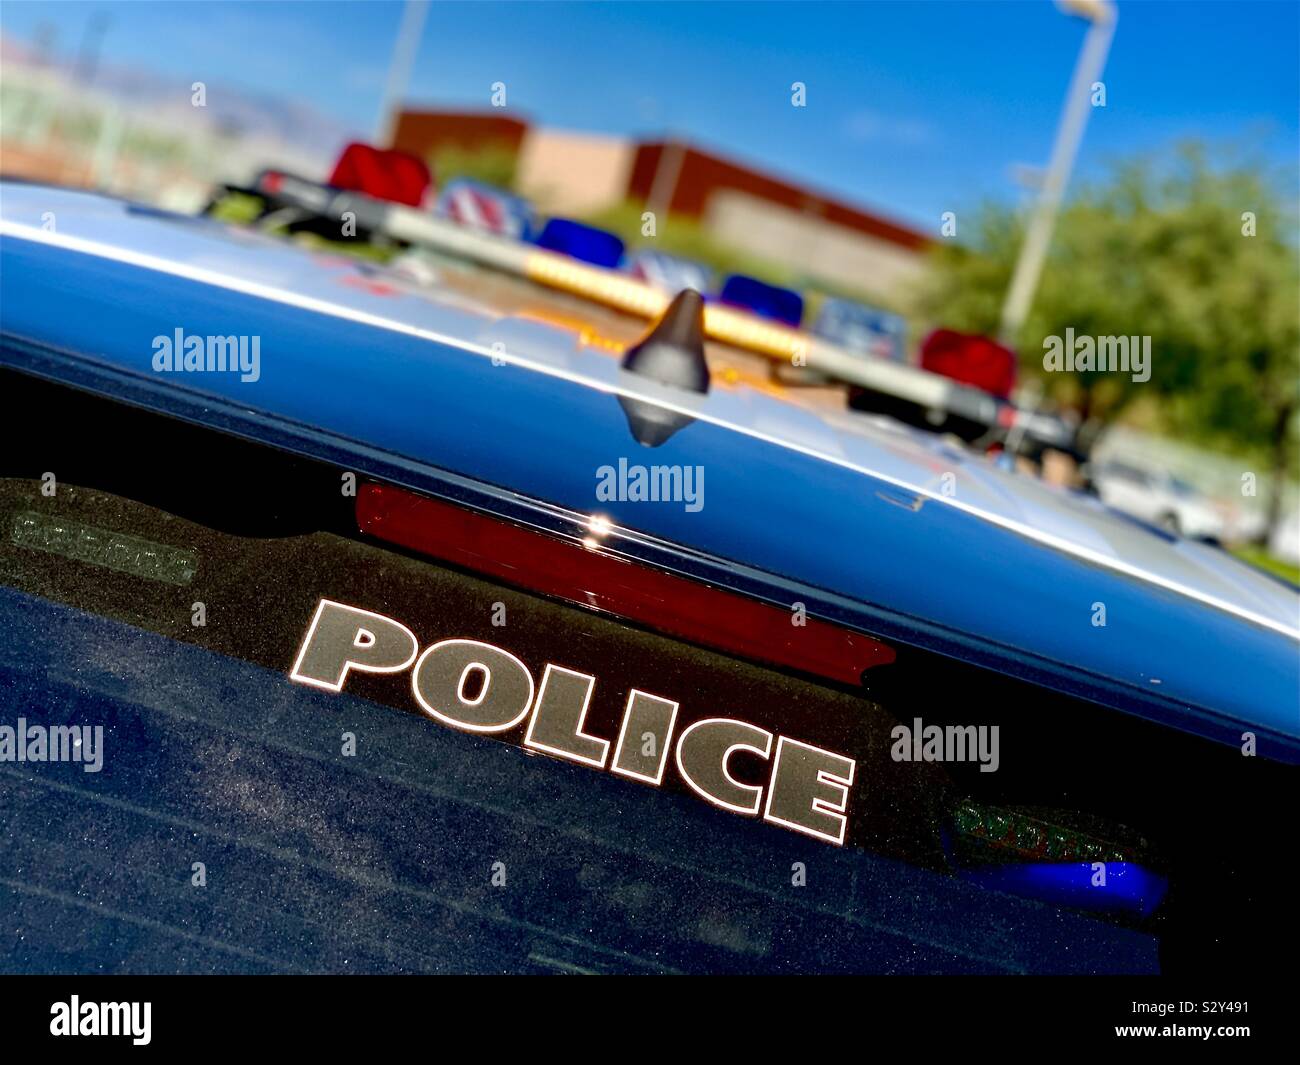 Immagine di un veicolo di polizia con molto poche luci sulla polizia profondamente visualizzati Foto Stock